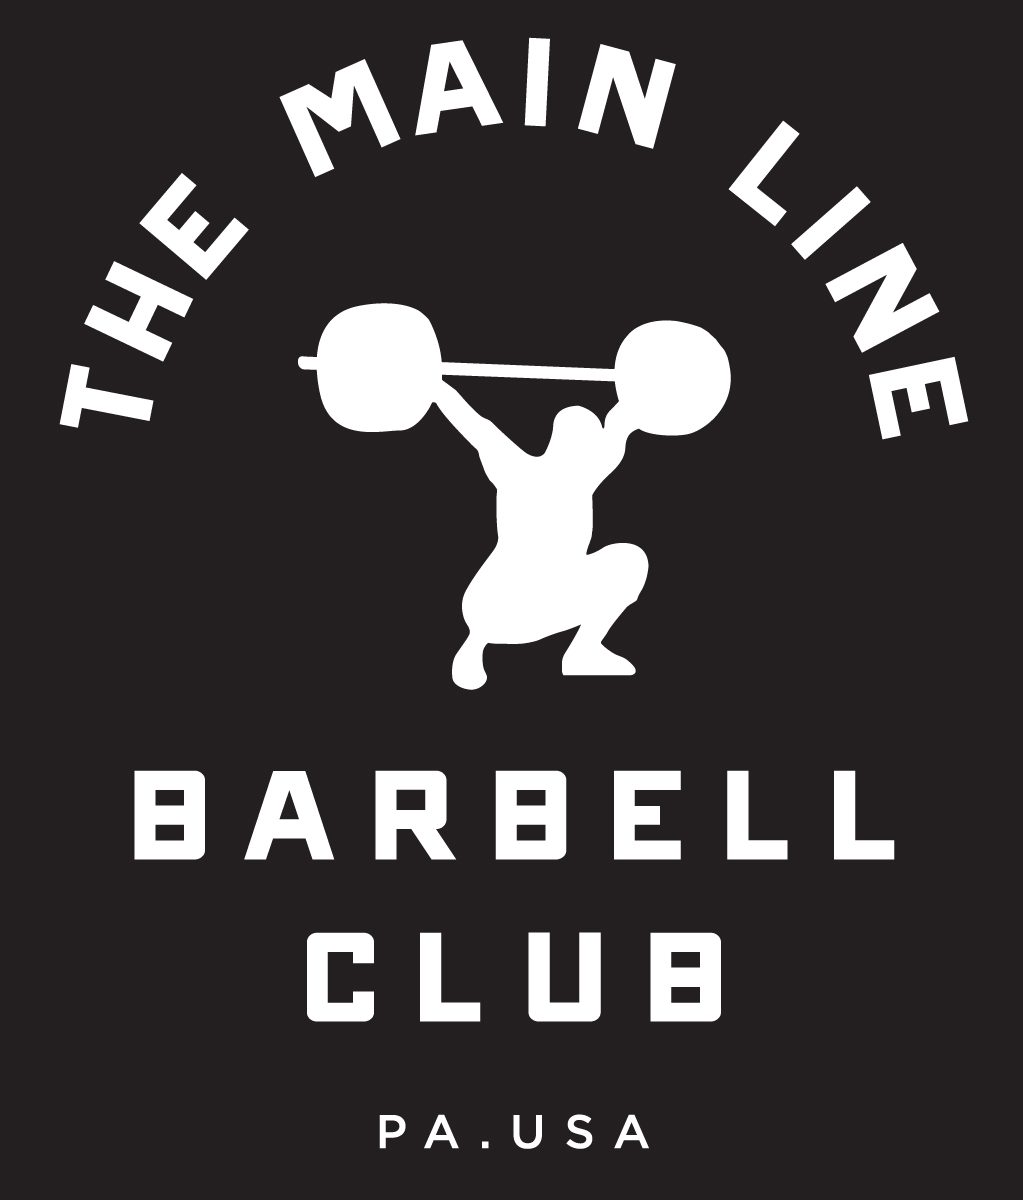 Week of 8.29.16 Barbell Club